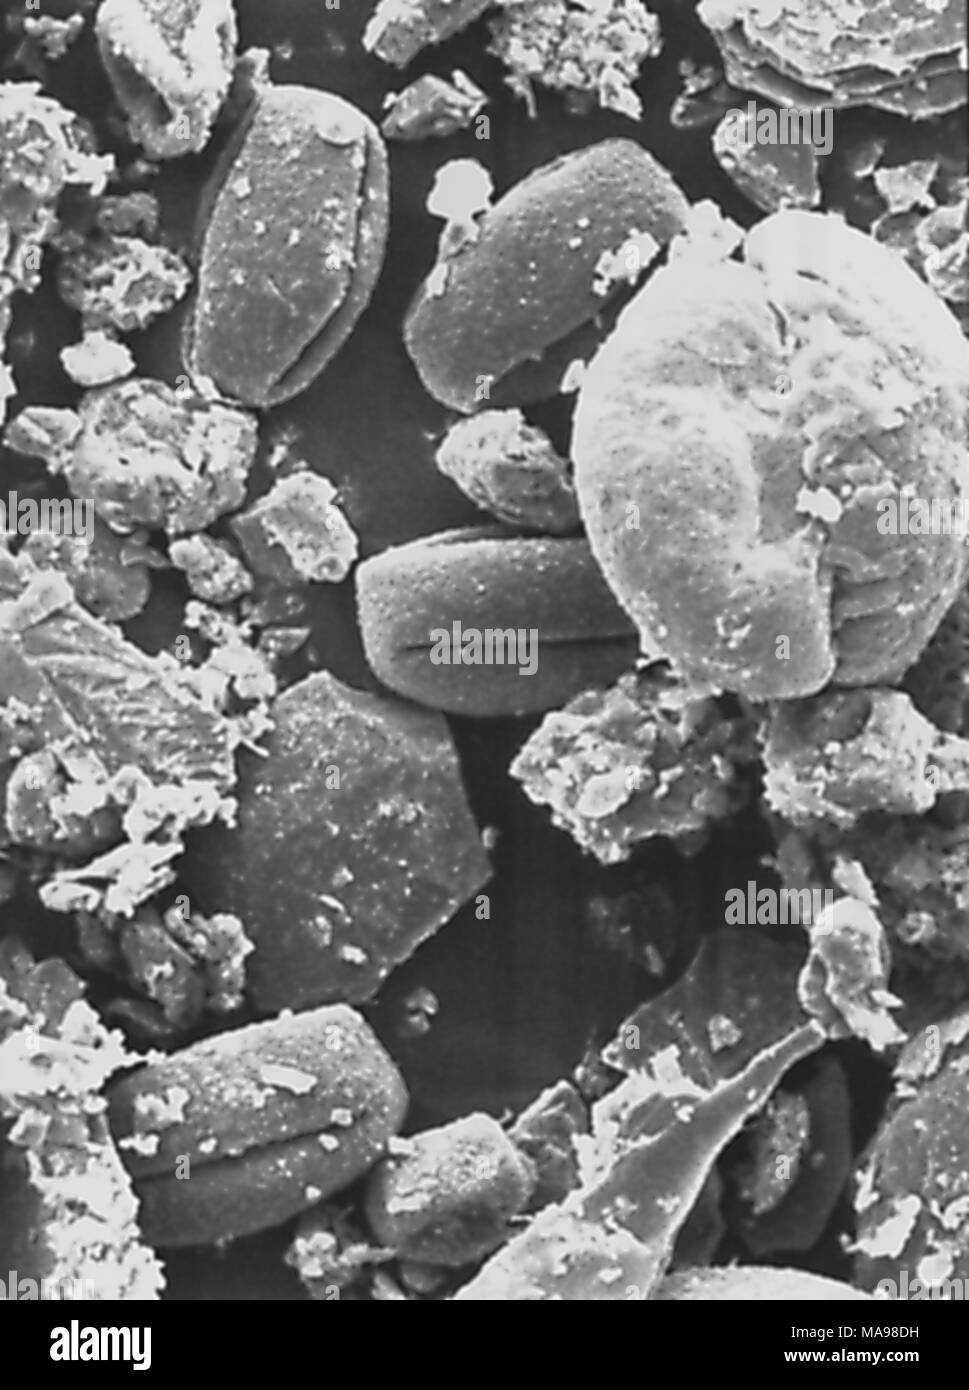 Morphologische Array von Pollen Granulat in der photomicrograph Film offenbart, Zentren für Krankheitskontrolle (CDC) Campus, Atlanta, Georgia, 2004. Mit freundlicher Mitten zur Krankheit-Steuerung/Janice Carr. () Stockfoto